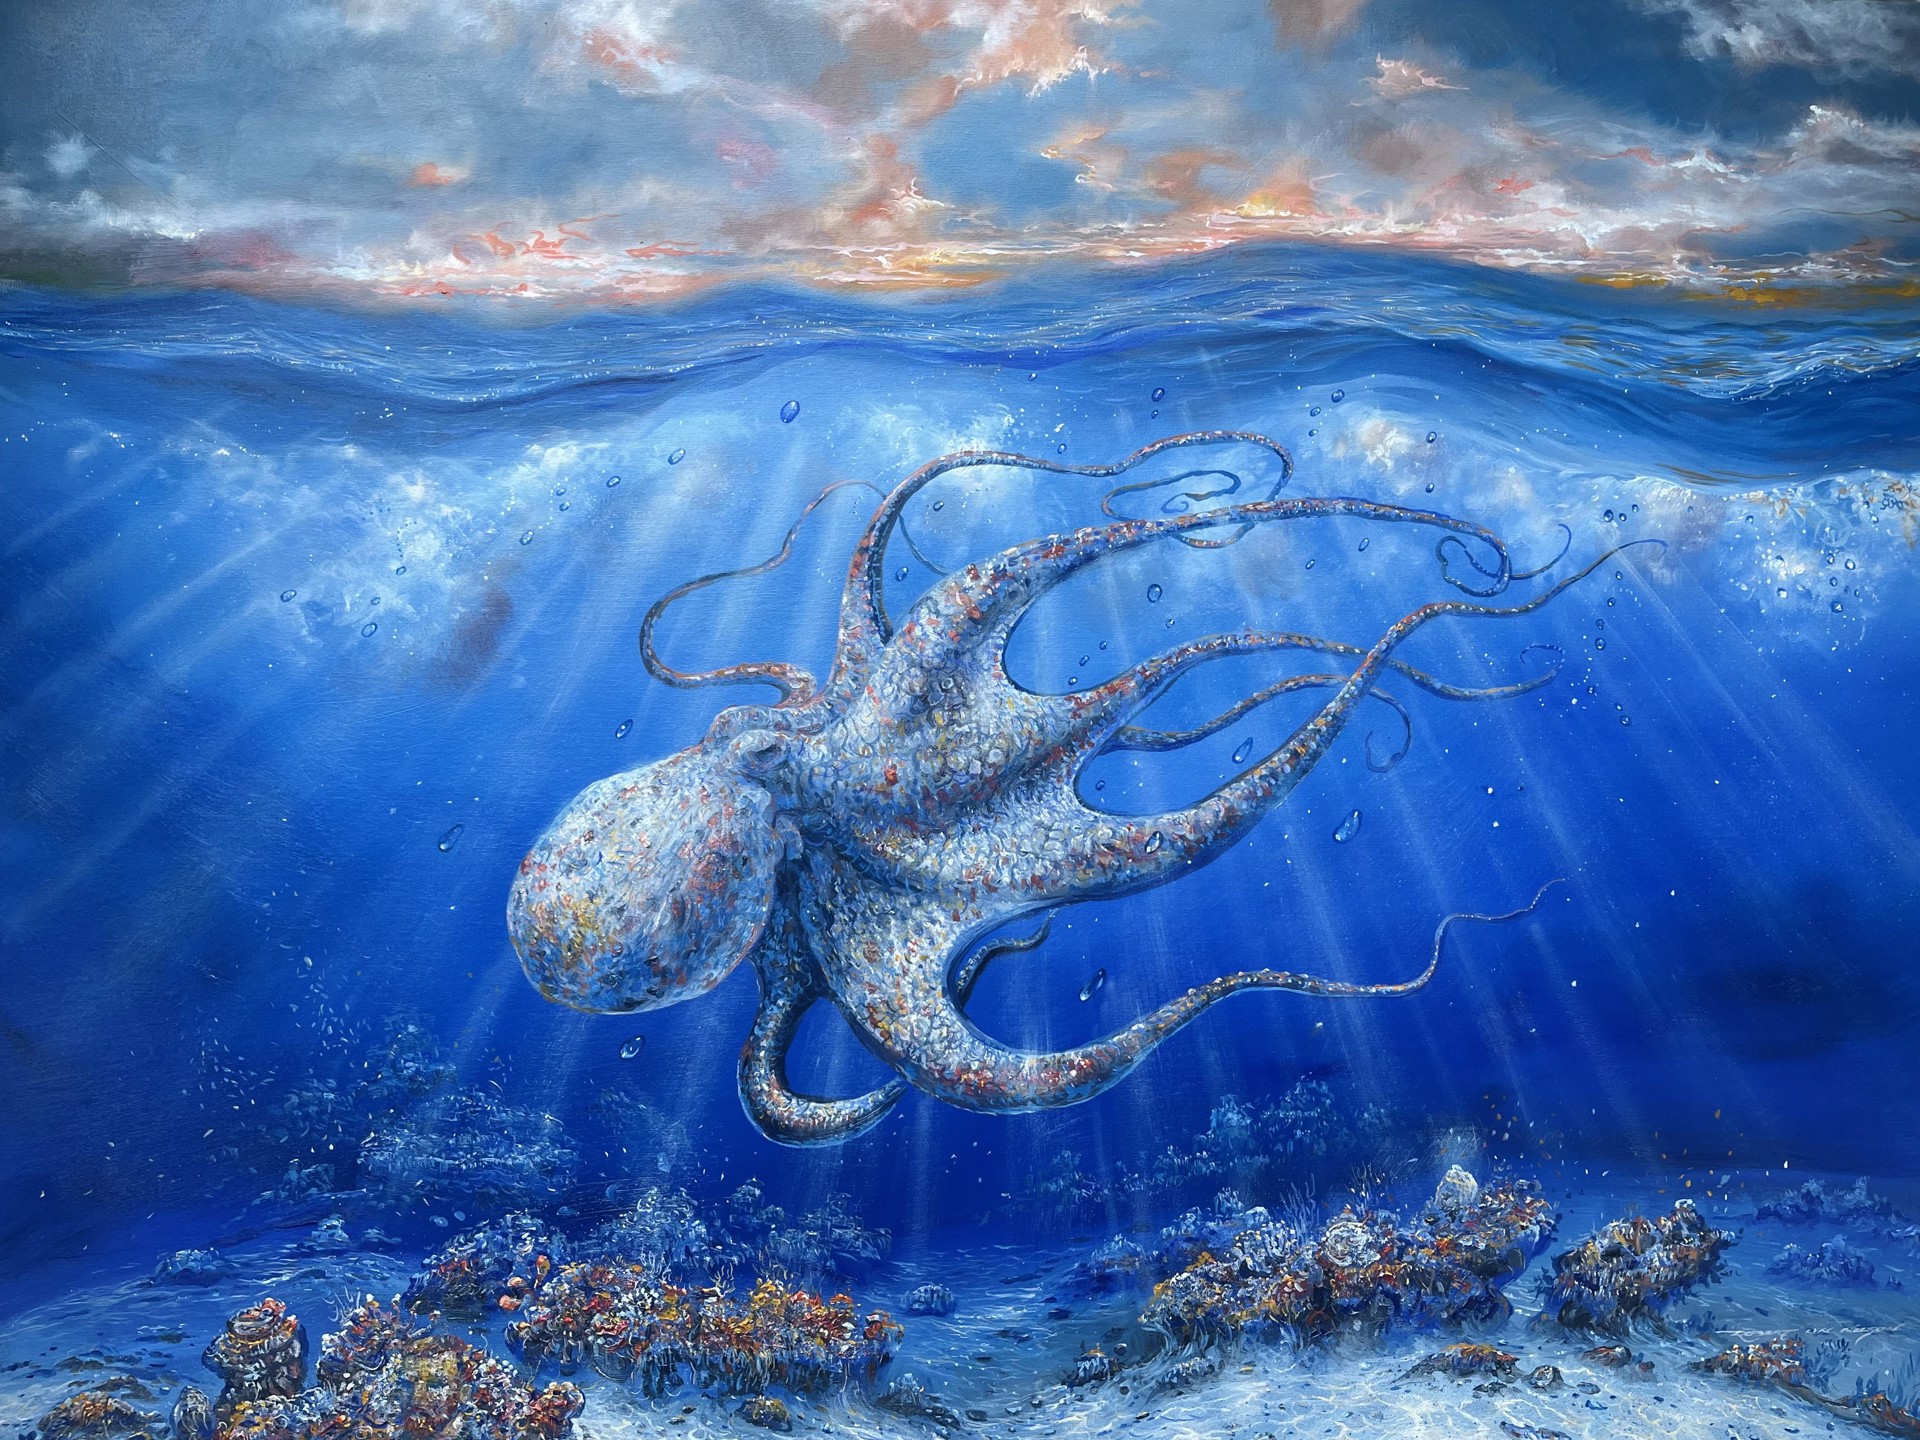 My Octopus Teacher by Robert Lyn Nelson